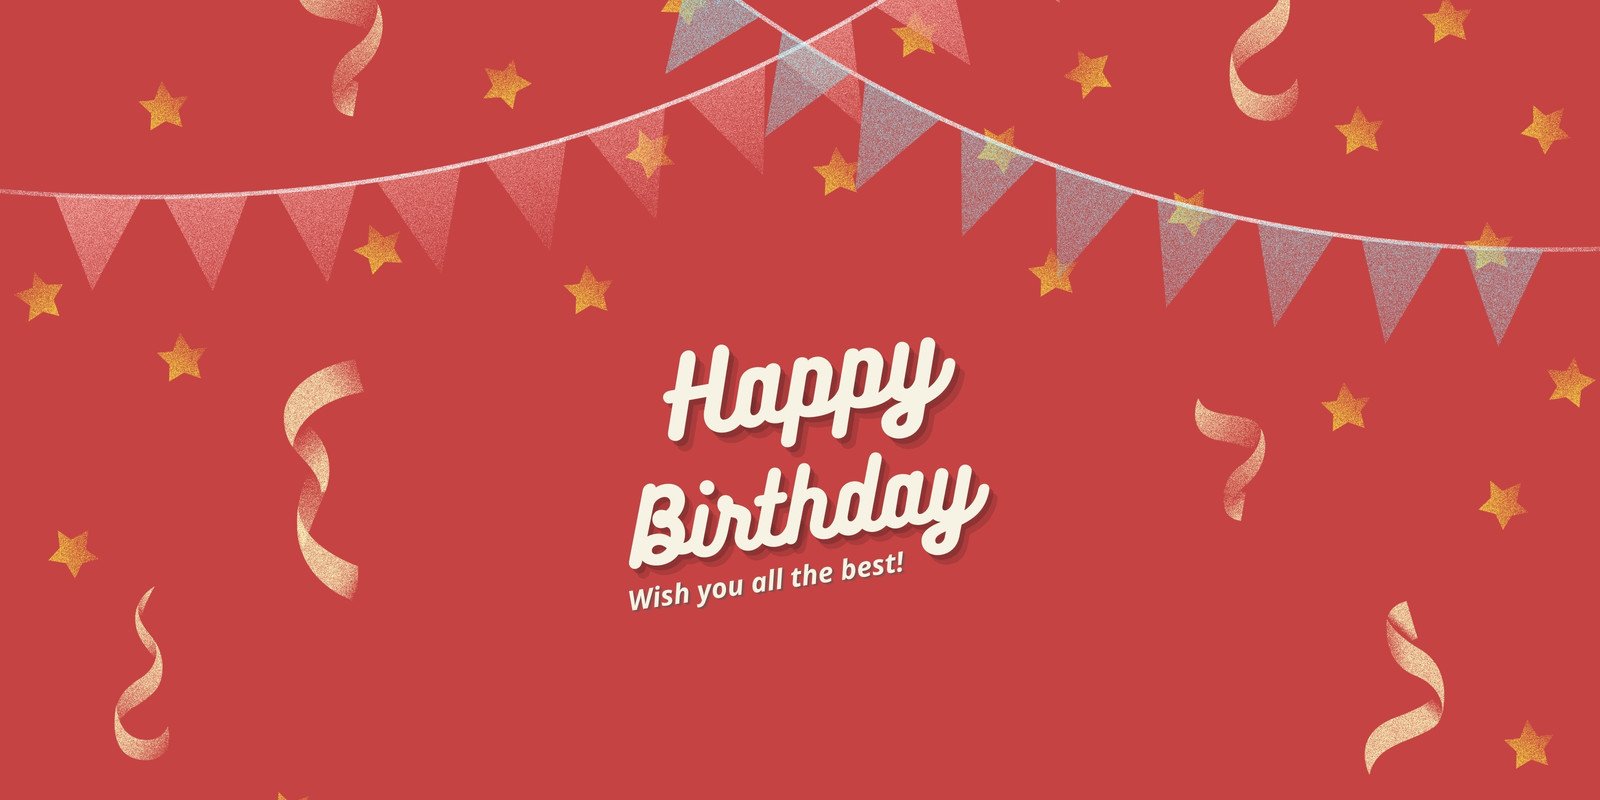 Happy Birthday Edit | lupon.gov.ph